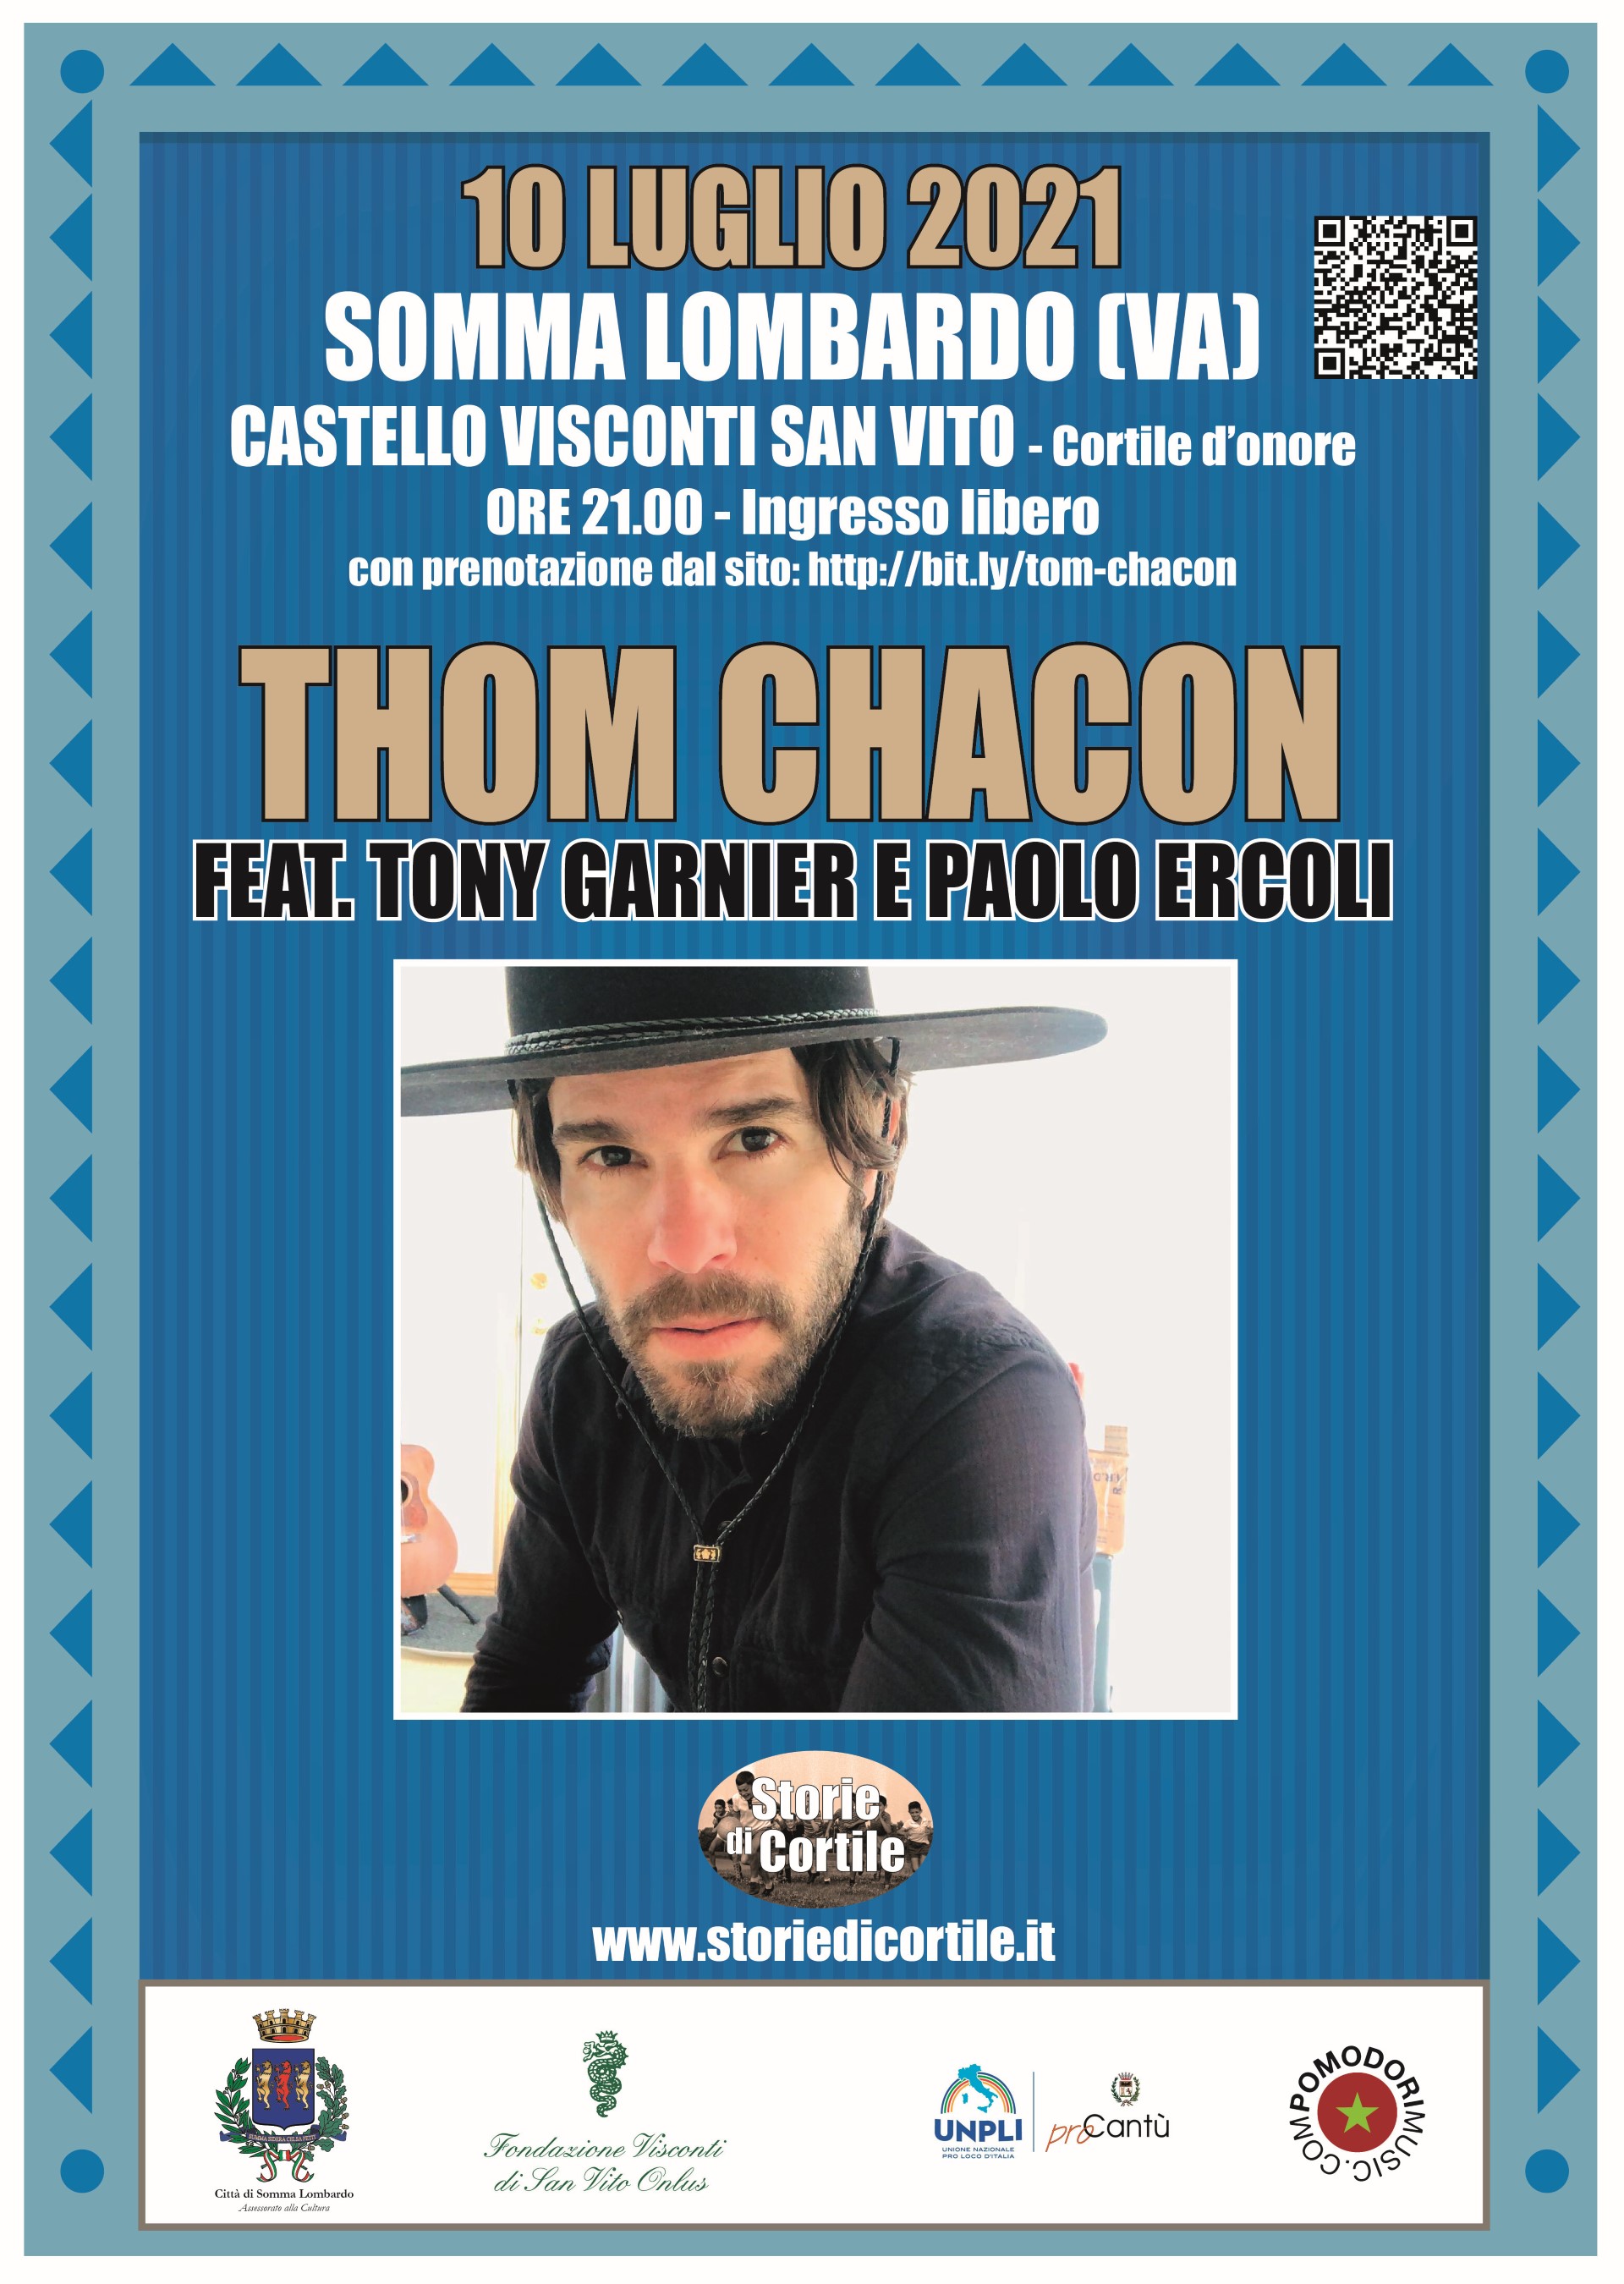 10/07/2021 - Somma Lombardo - Thom Chacon feat. Tony Garnier e Paolo Ercoli